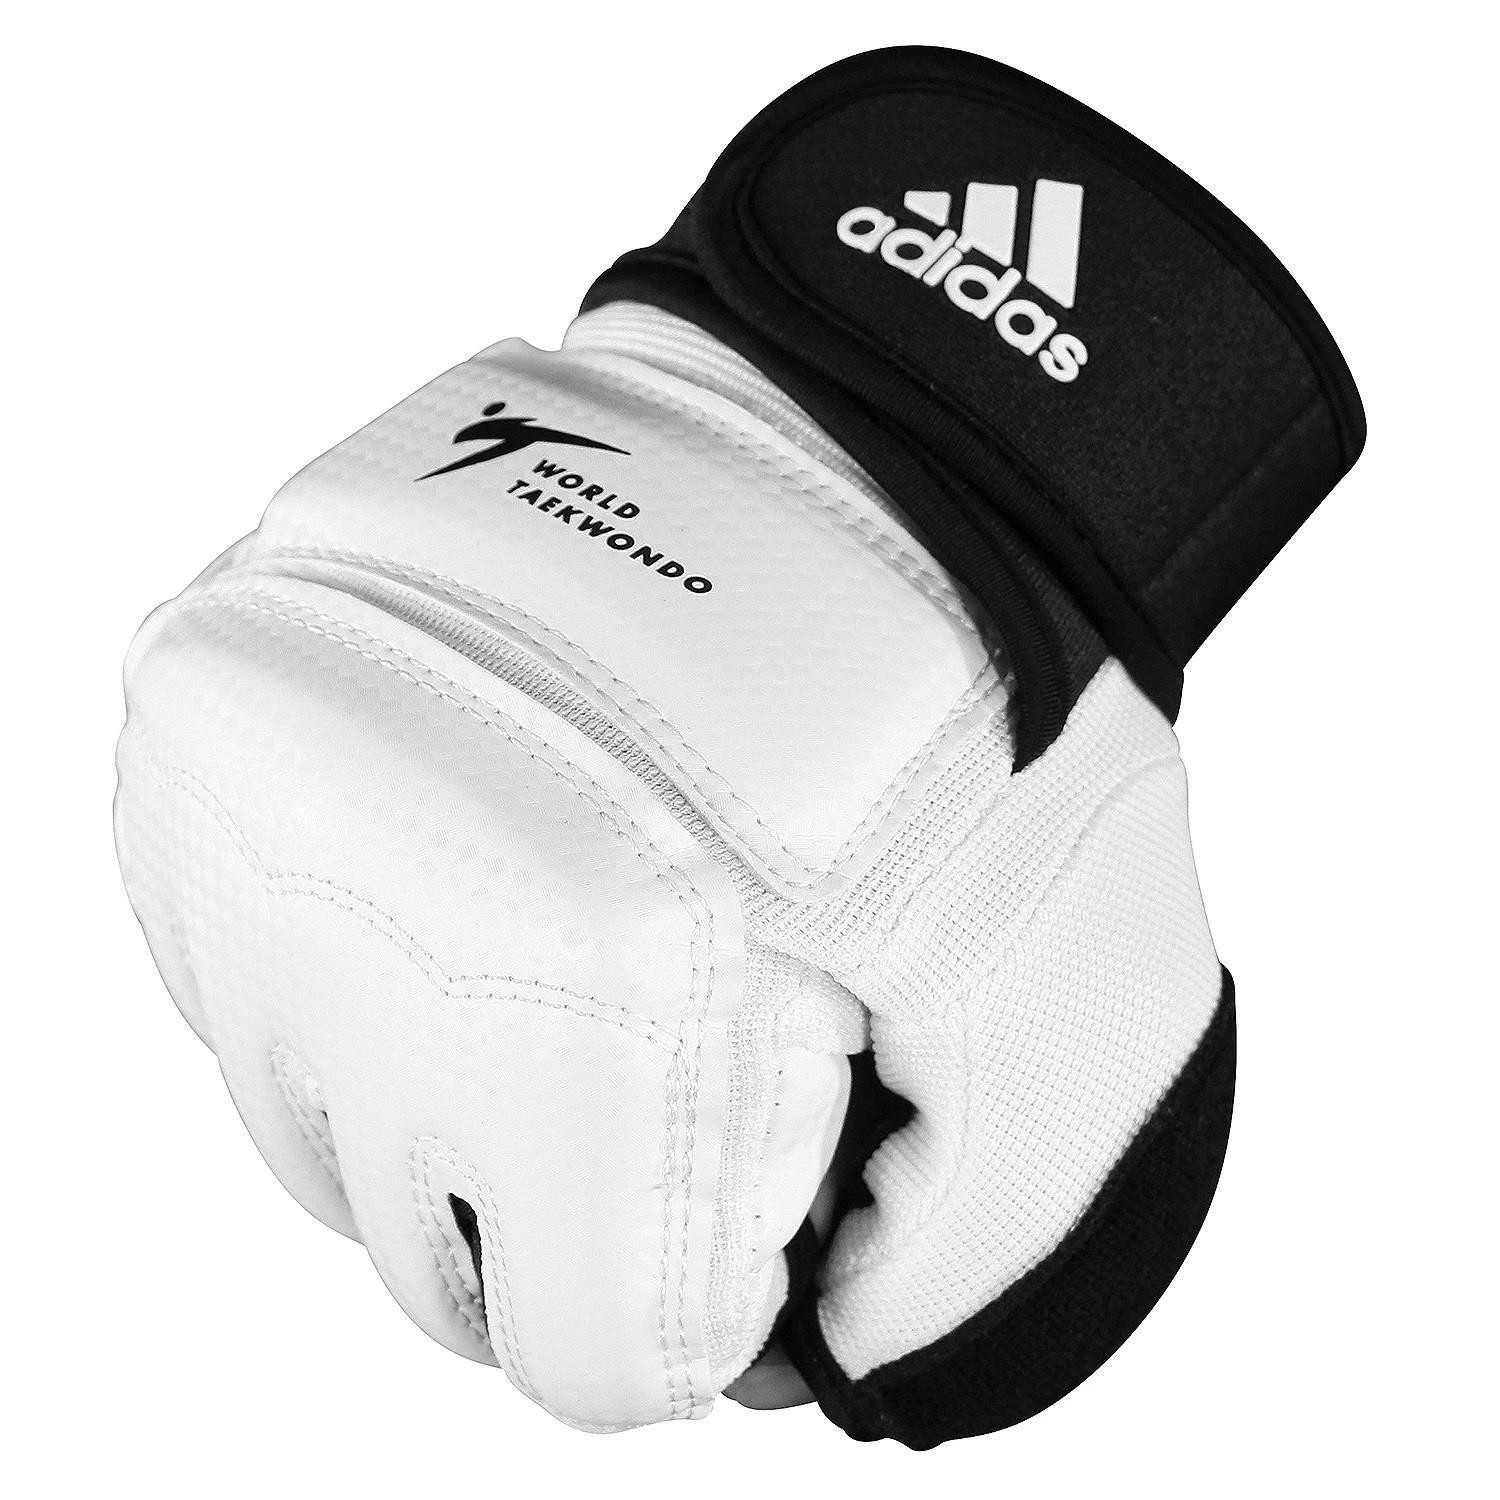 Adidas ADITFG01 Wt Onaylı Taekwondo Eldiveni - Boksshop